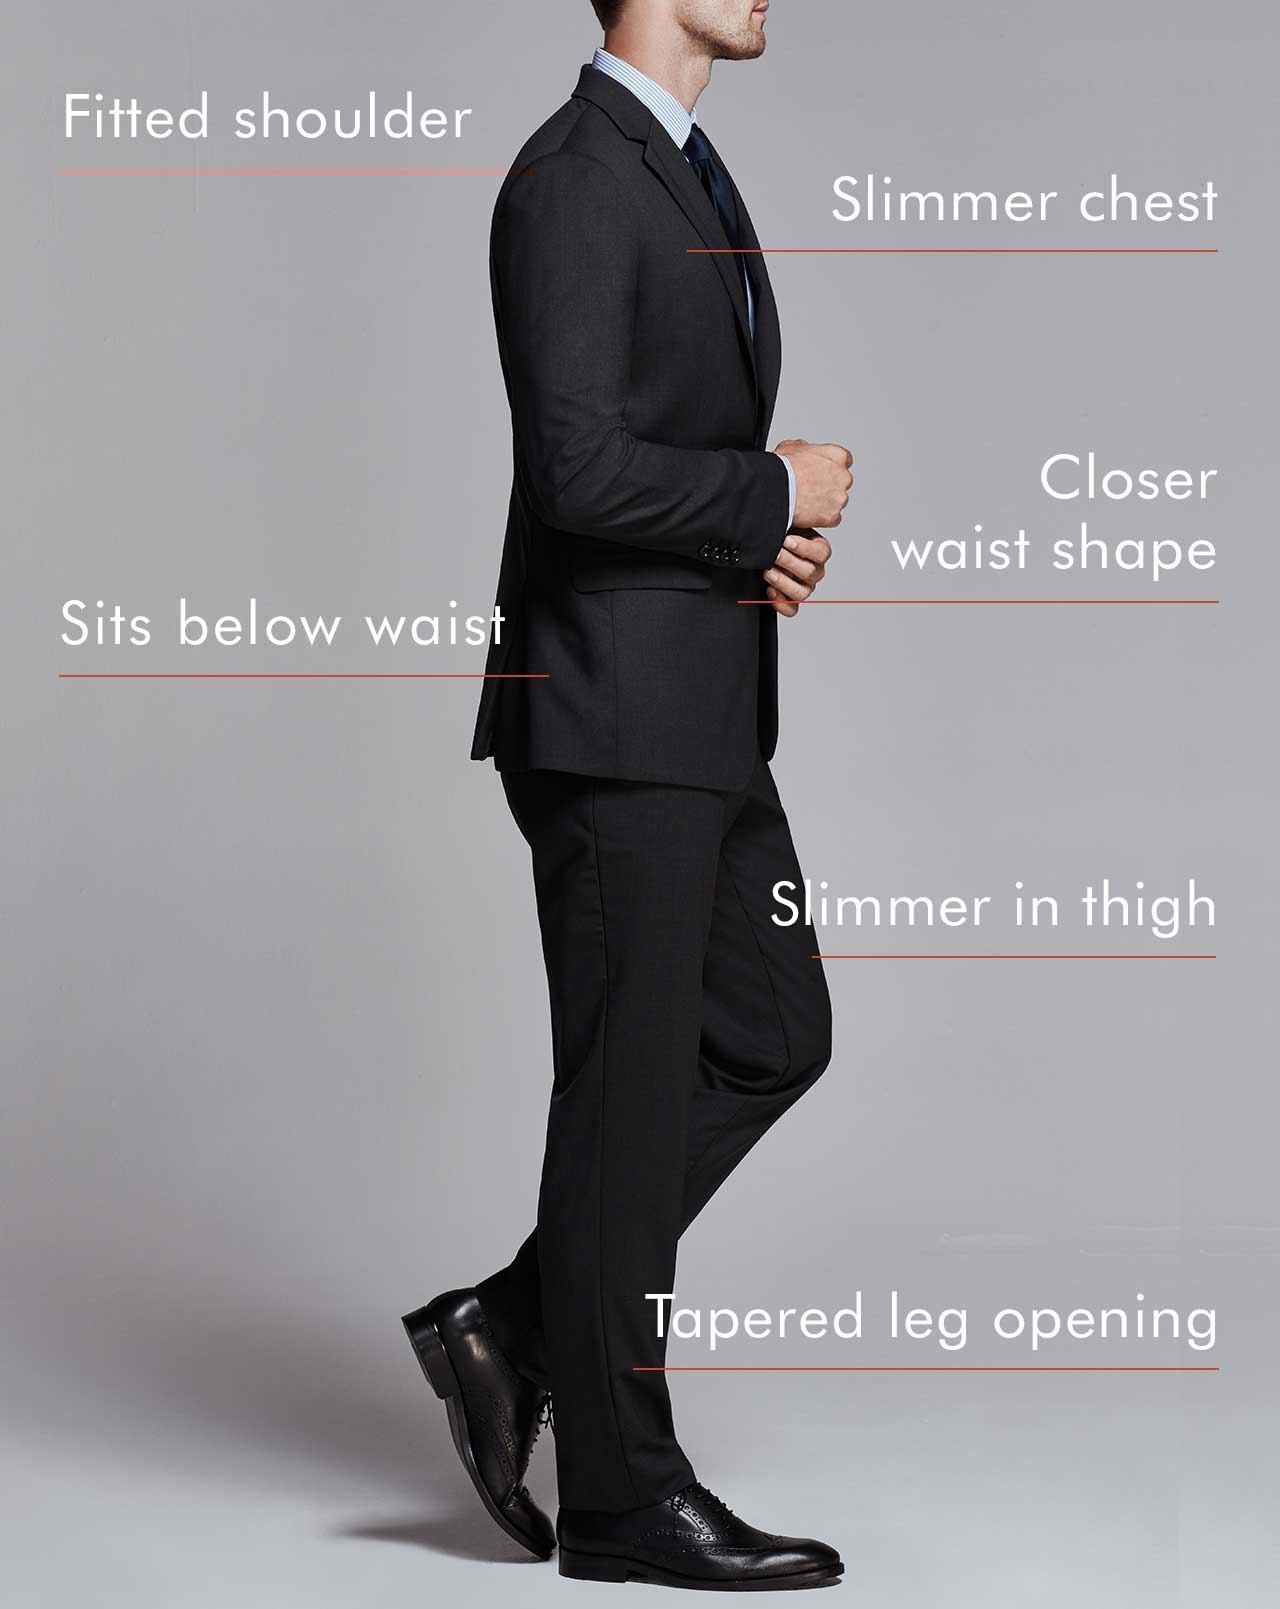 Suit Fit Guide  Slim Fit vs Tailored Fit Suits